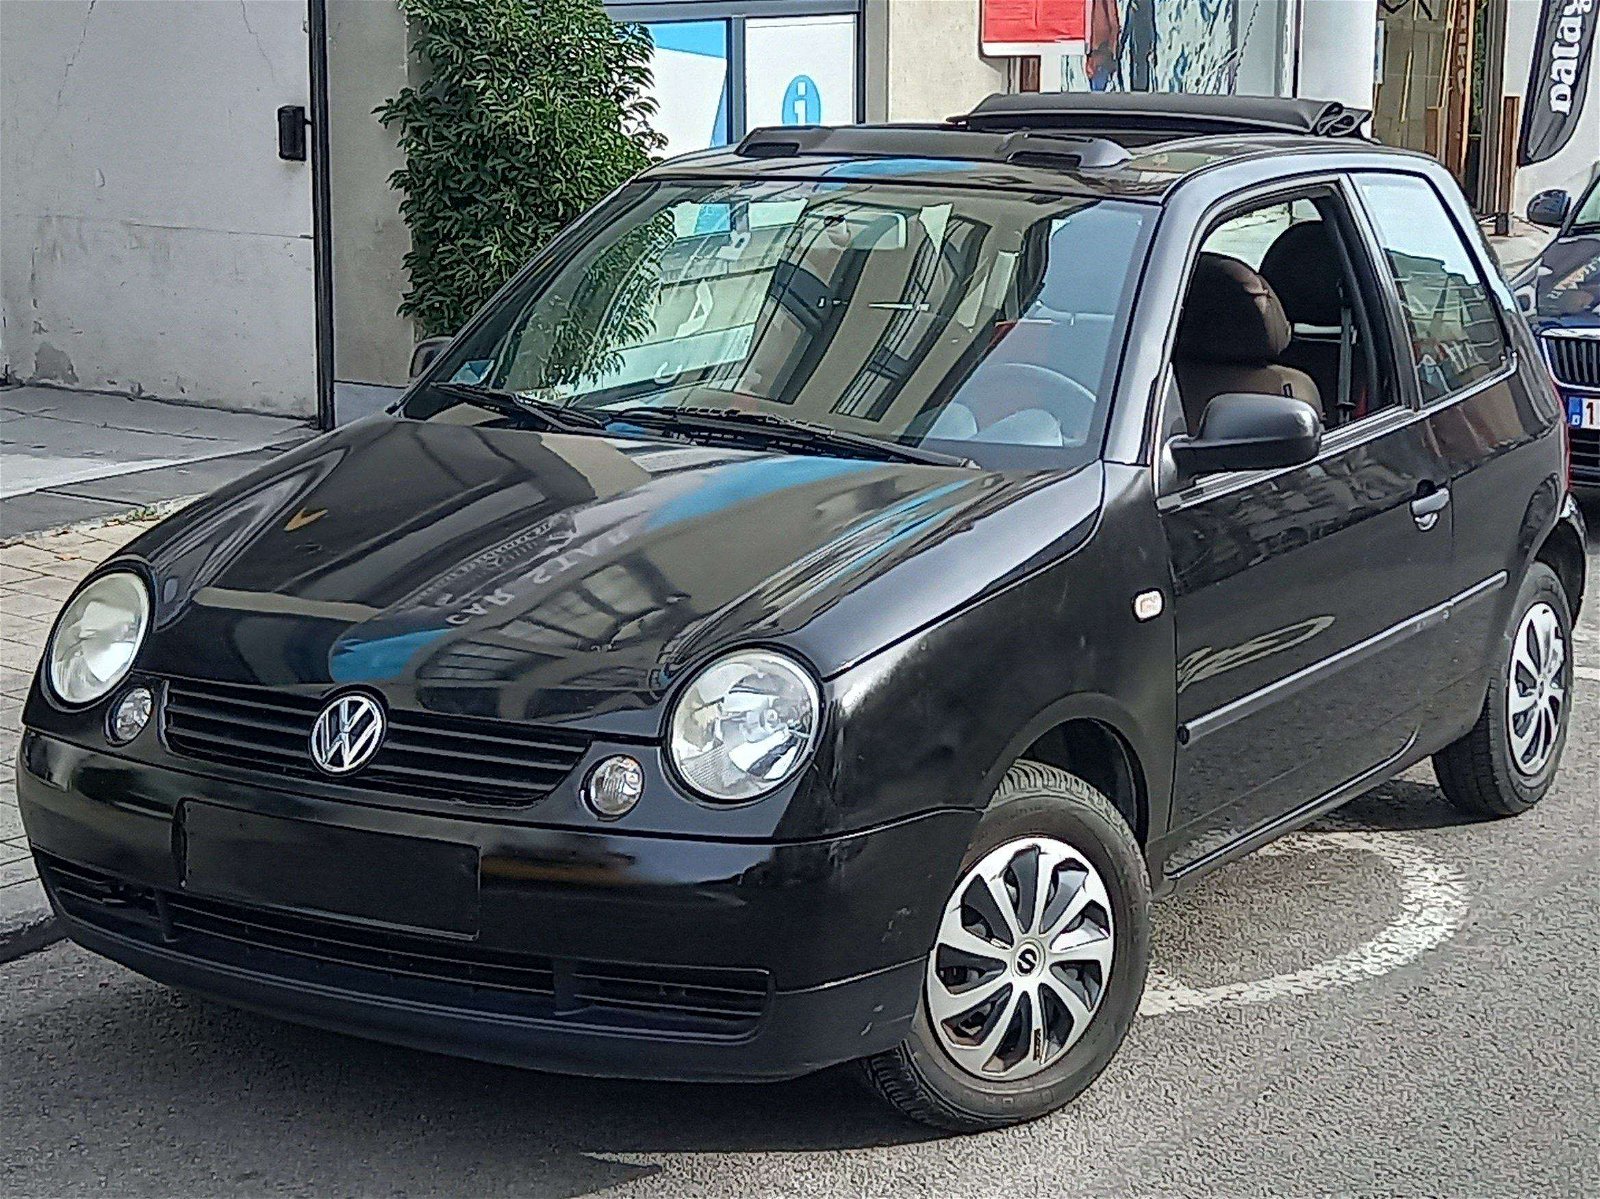 Volkswagen occasion à Bruxelles à 2.190 €